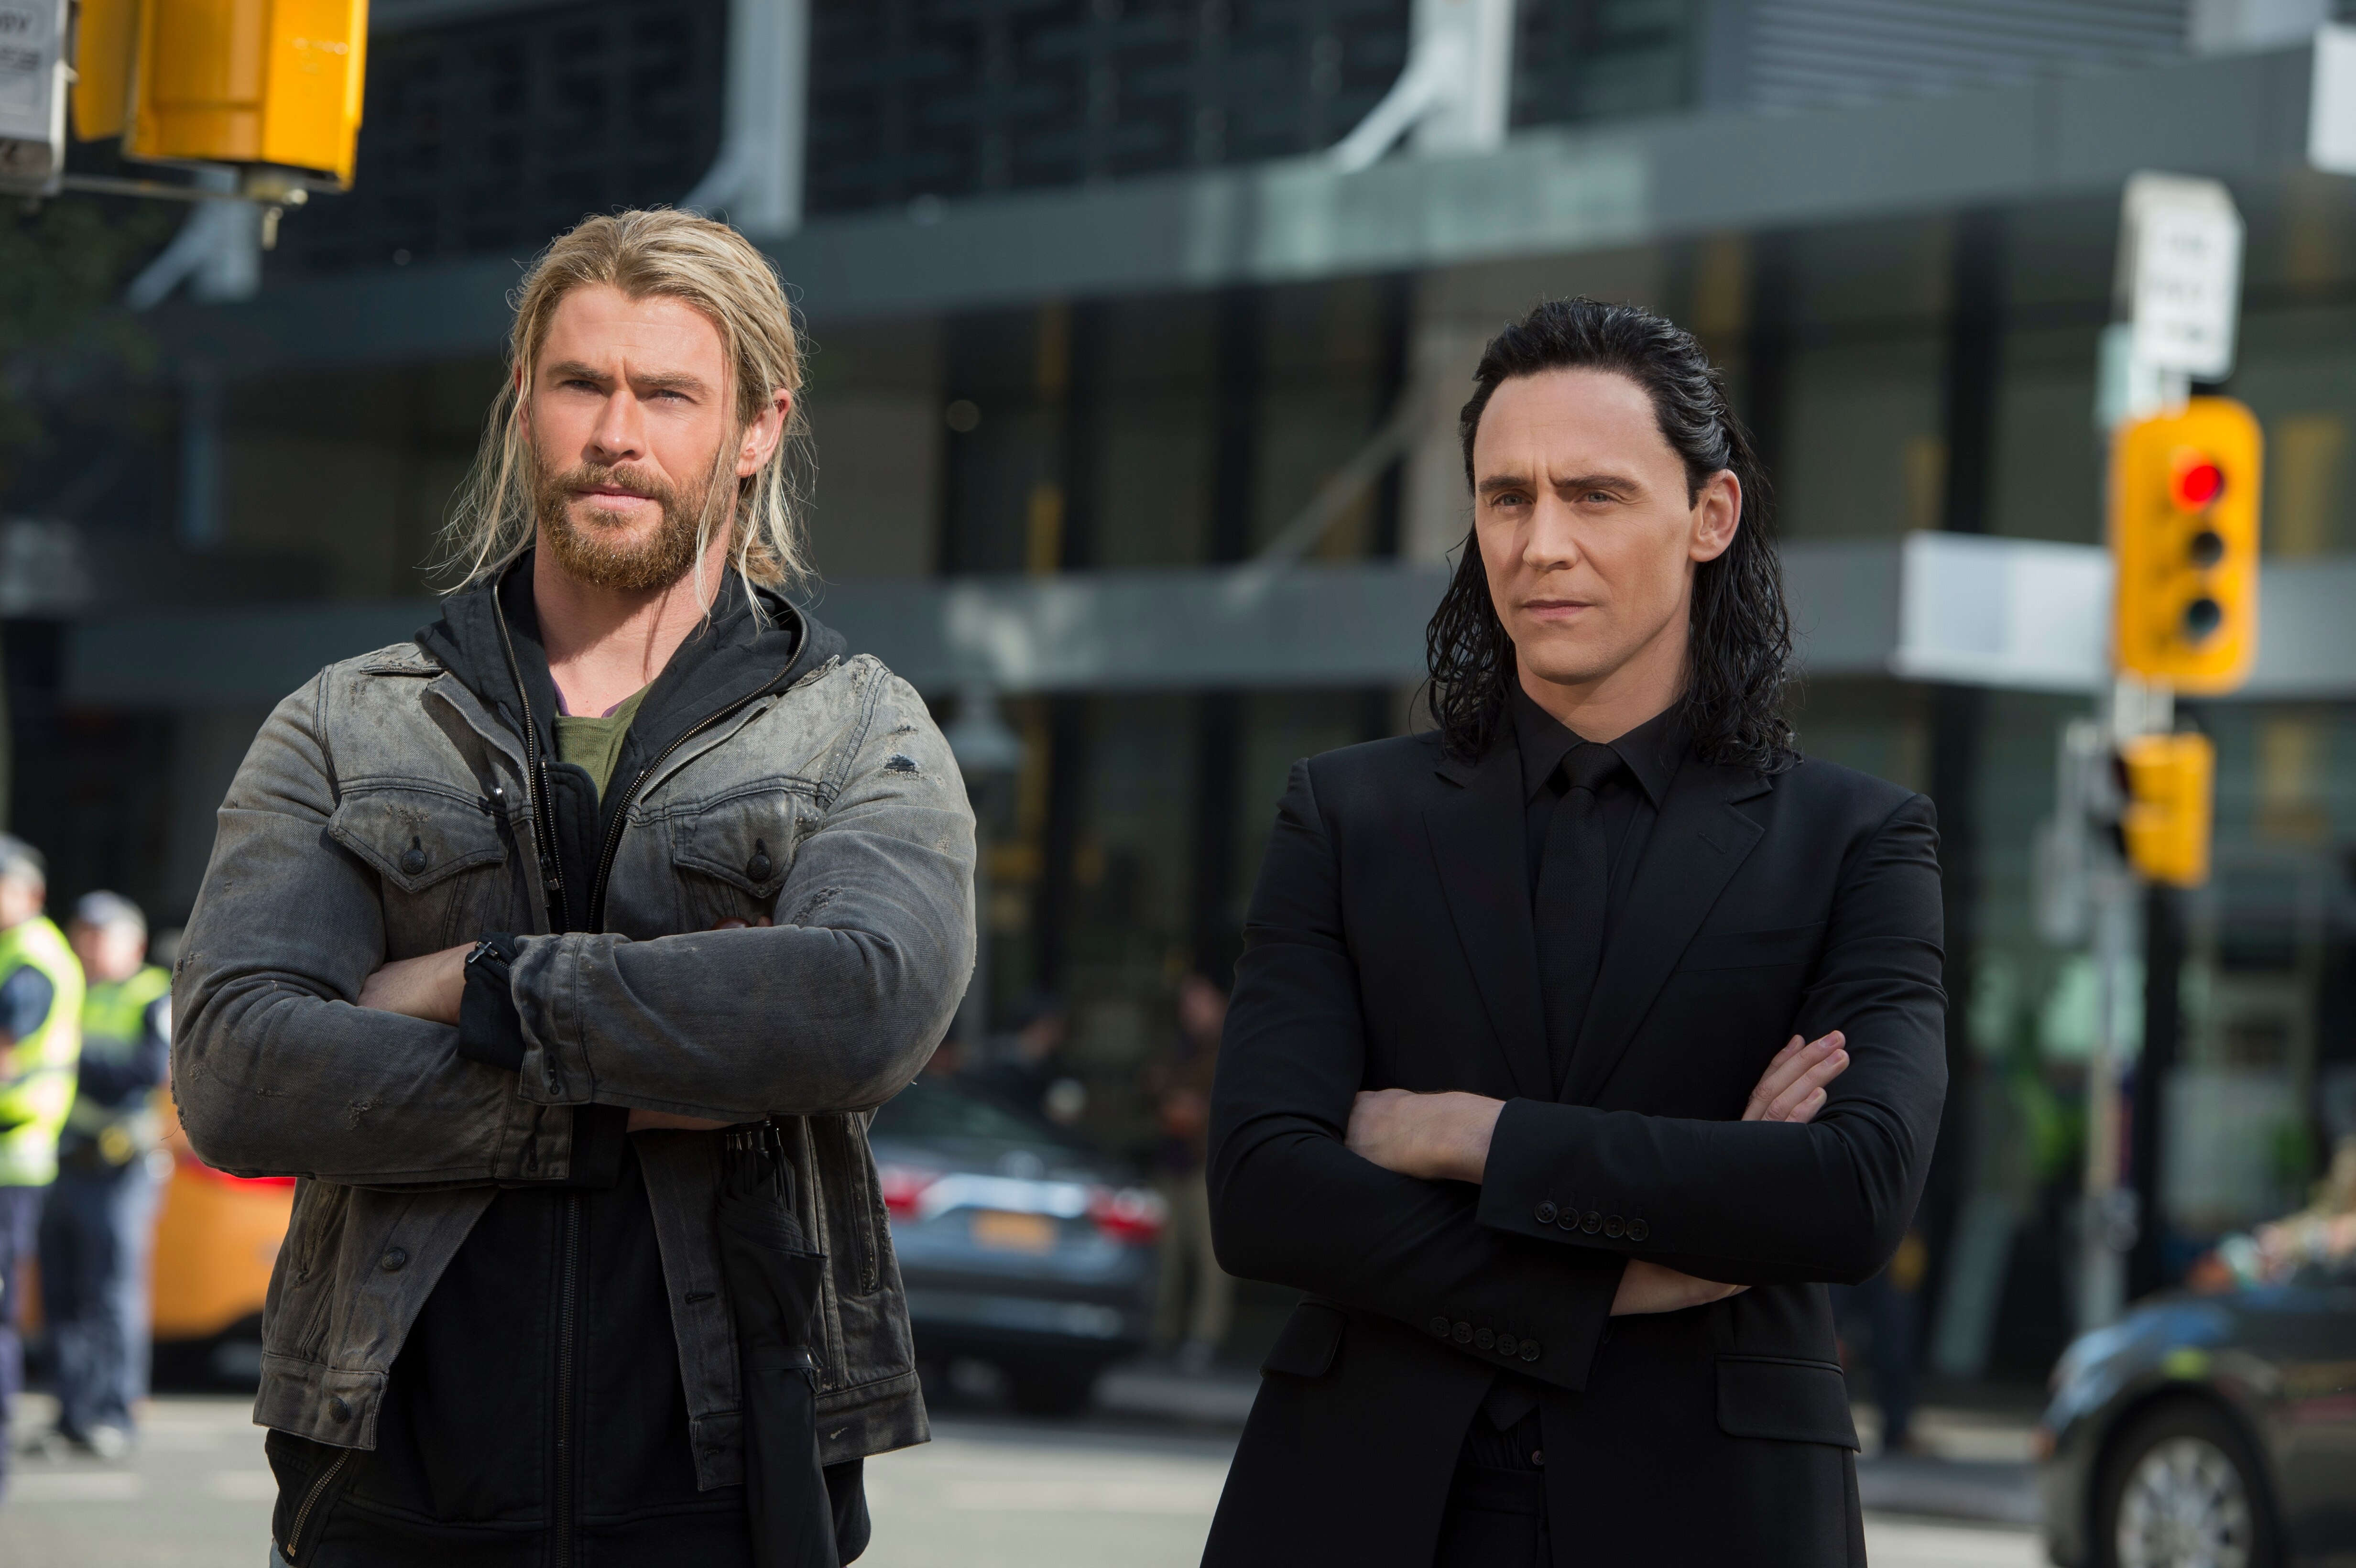 Thor: Ragnarok' estreia nesta quinta-feira, 26, no cinema de